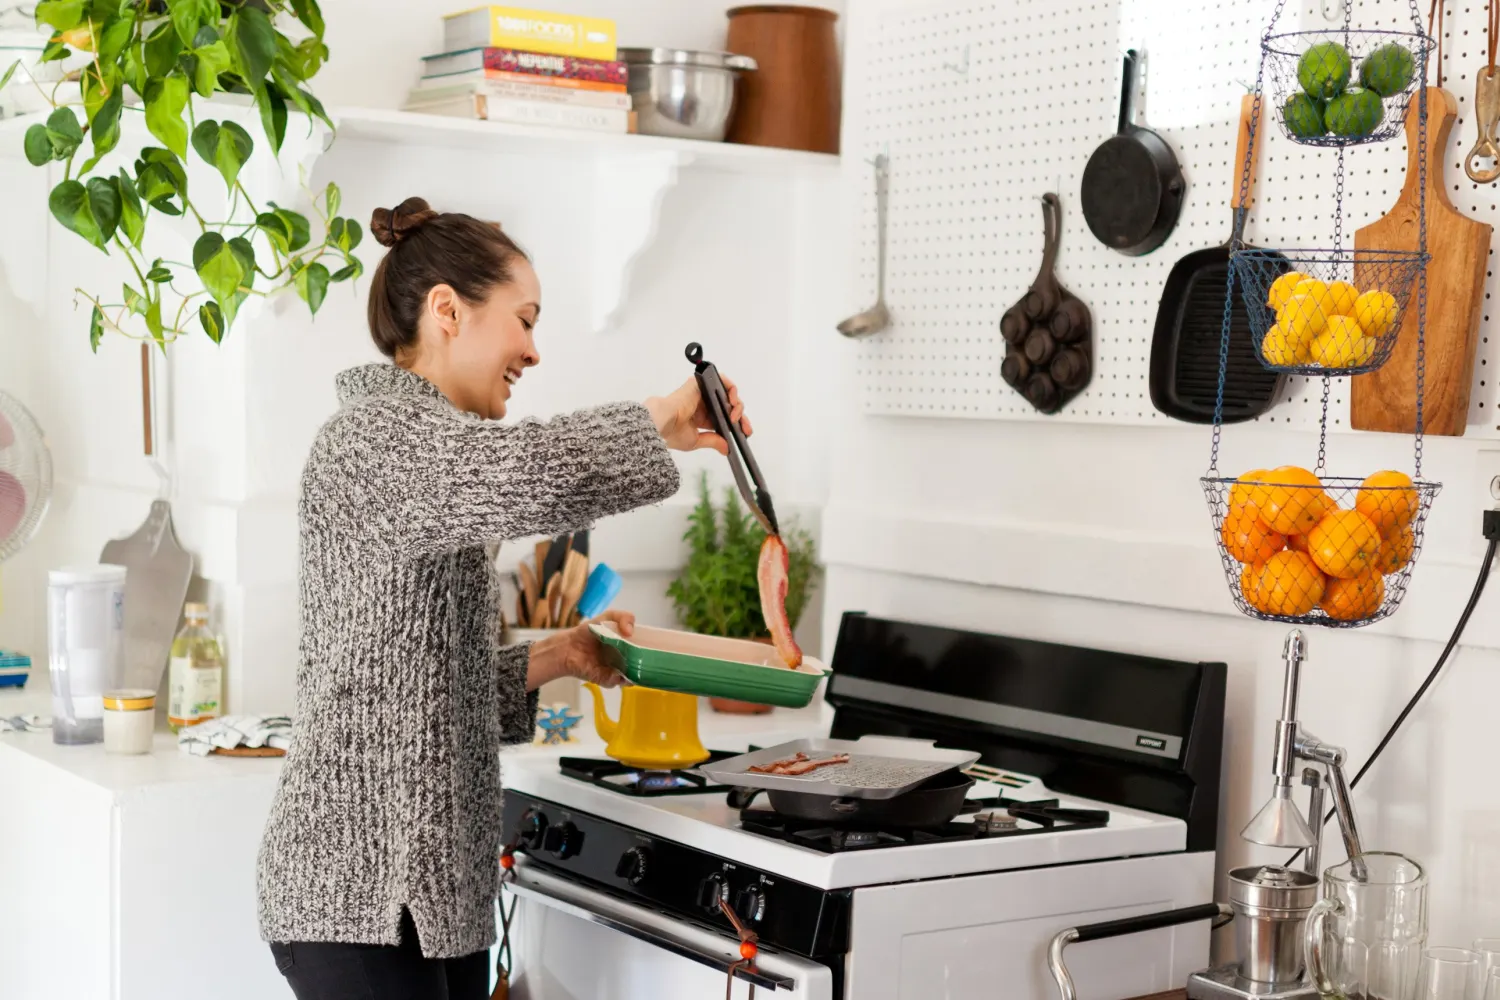 Danh sách kiểm tra nhà bếp Giữ bếp sạch sẽ và ở tình trạng tốt. Sử dụng bếp ít nhất một lần một ngày, ngay cả khi chỉ để đun nước. Điều này giữ cho năng lượng hoạt động. Thường xuyên vứt bỏ thực phẩm đã hết hạn sử dụng trong tủ lạnh và tủ đựng thức ăn.